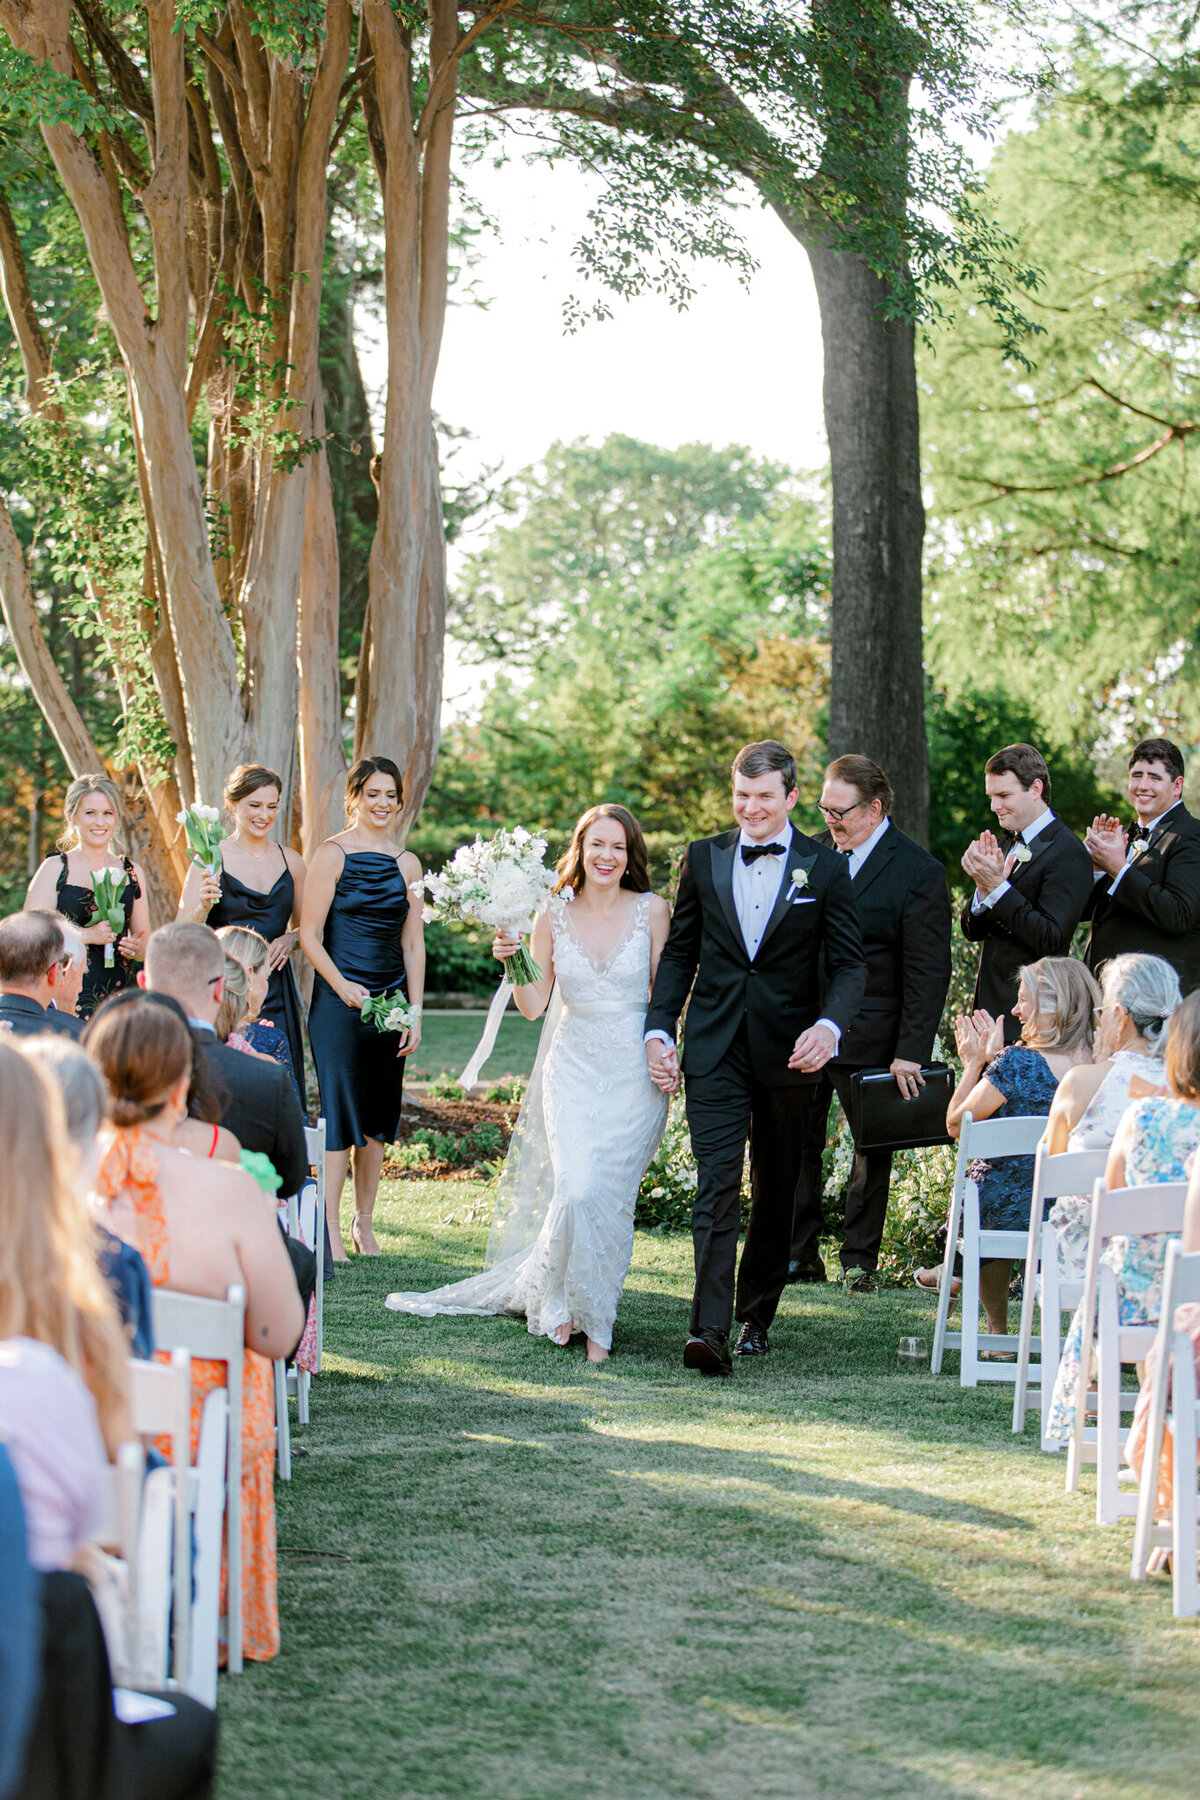 Gena & Matt's Wedding at the Dallas Arboretum | Dallas Wedding Photographer | Sami Kathryn Photography-158